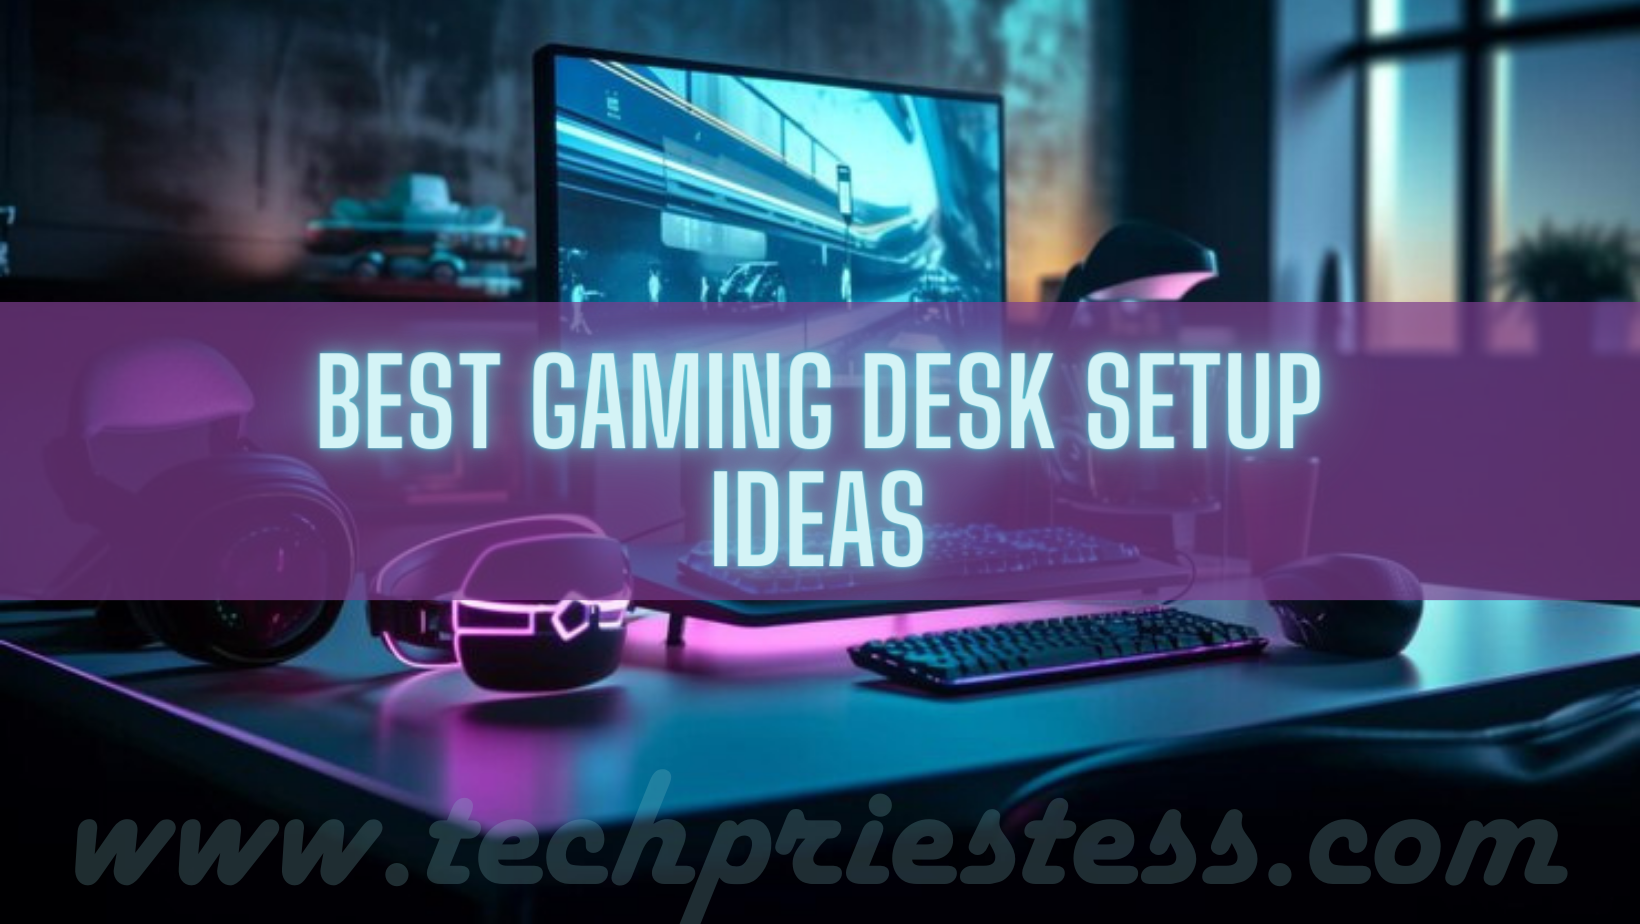 Gaming desk setup ideas